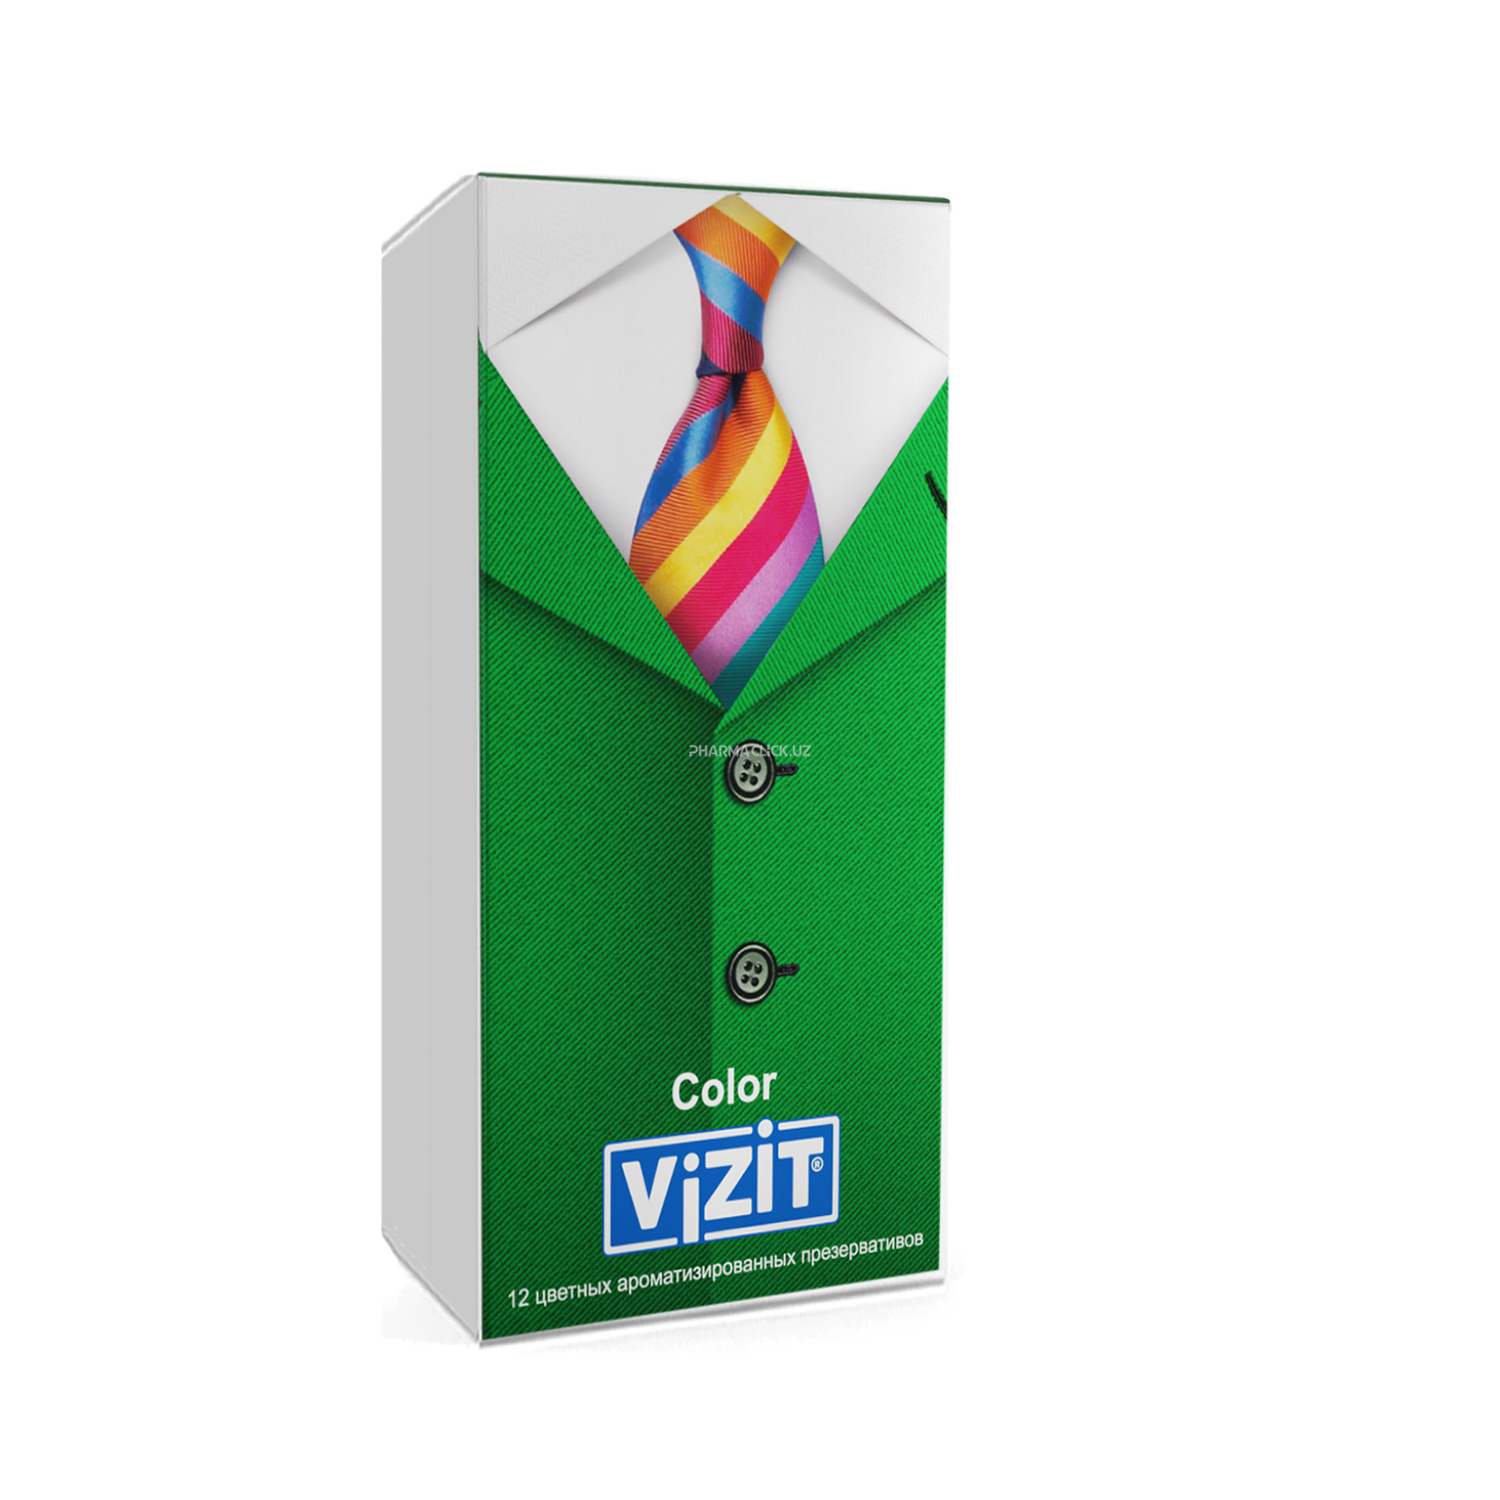 Презервативы "VIZIT" №12 цветные ароматизированные